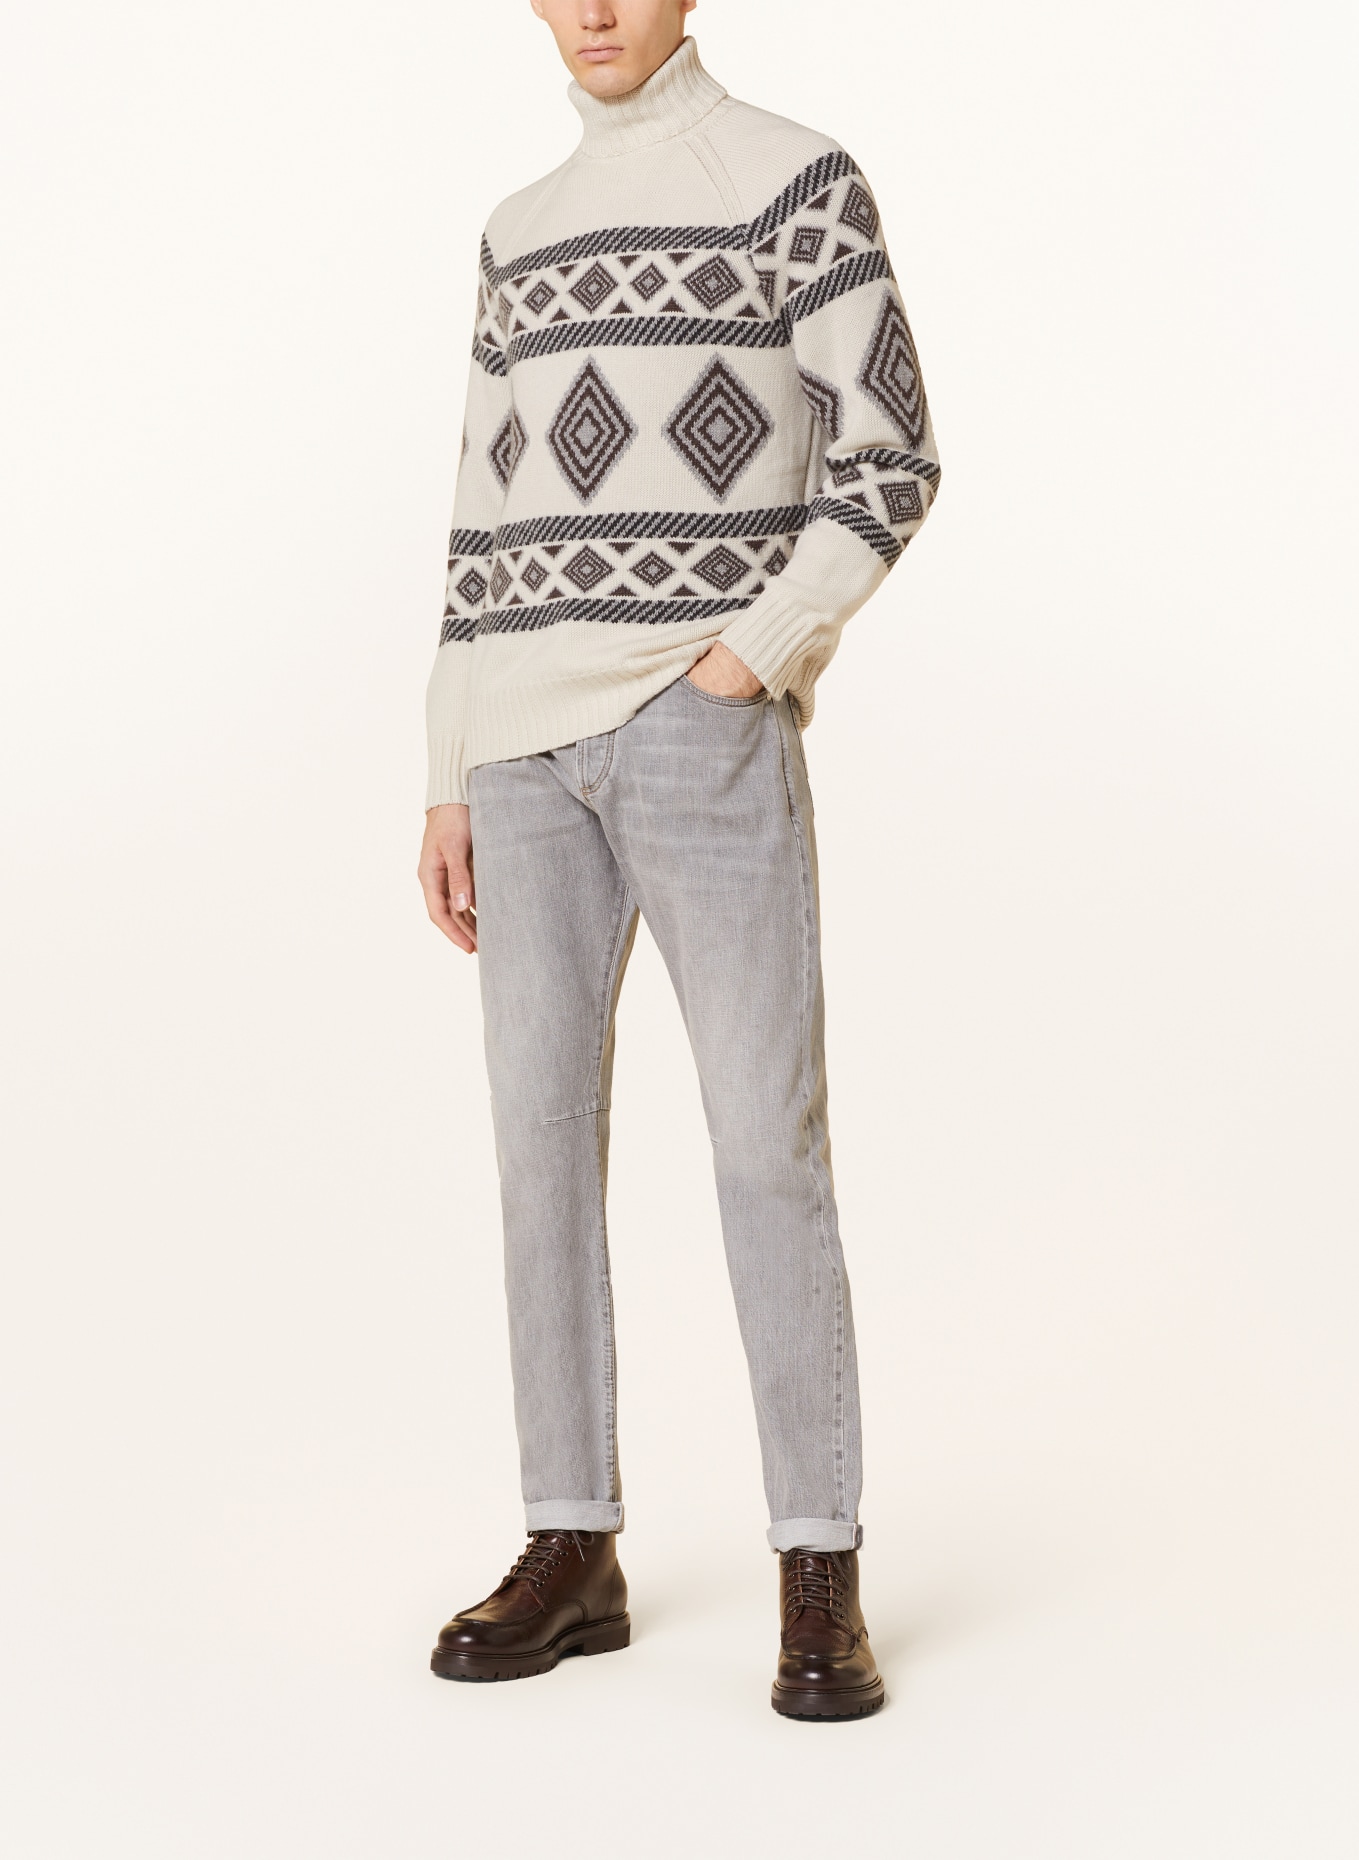 BRUNELLO CUCINELLI Turtleneck sweater in cashmere, Color: CREAM/ DARK BROWN/ GRAY (Image 2)